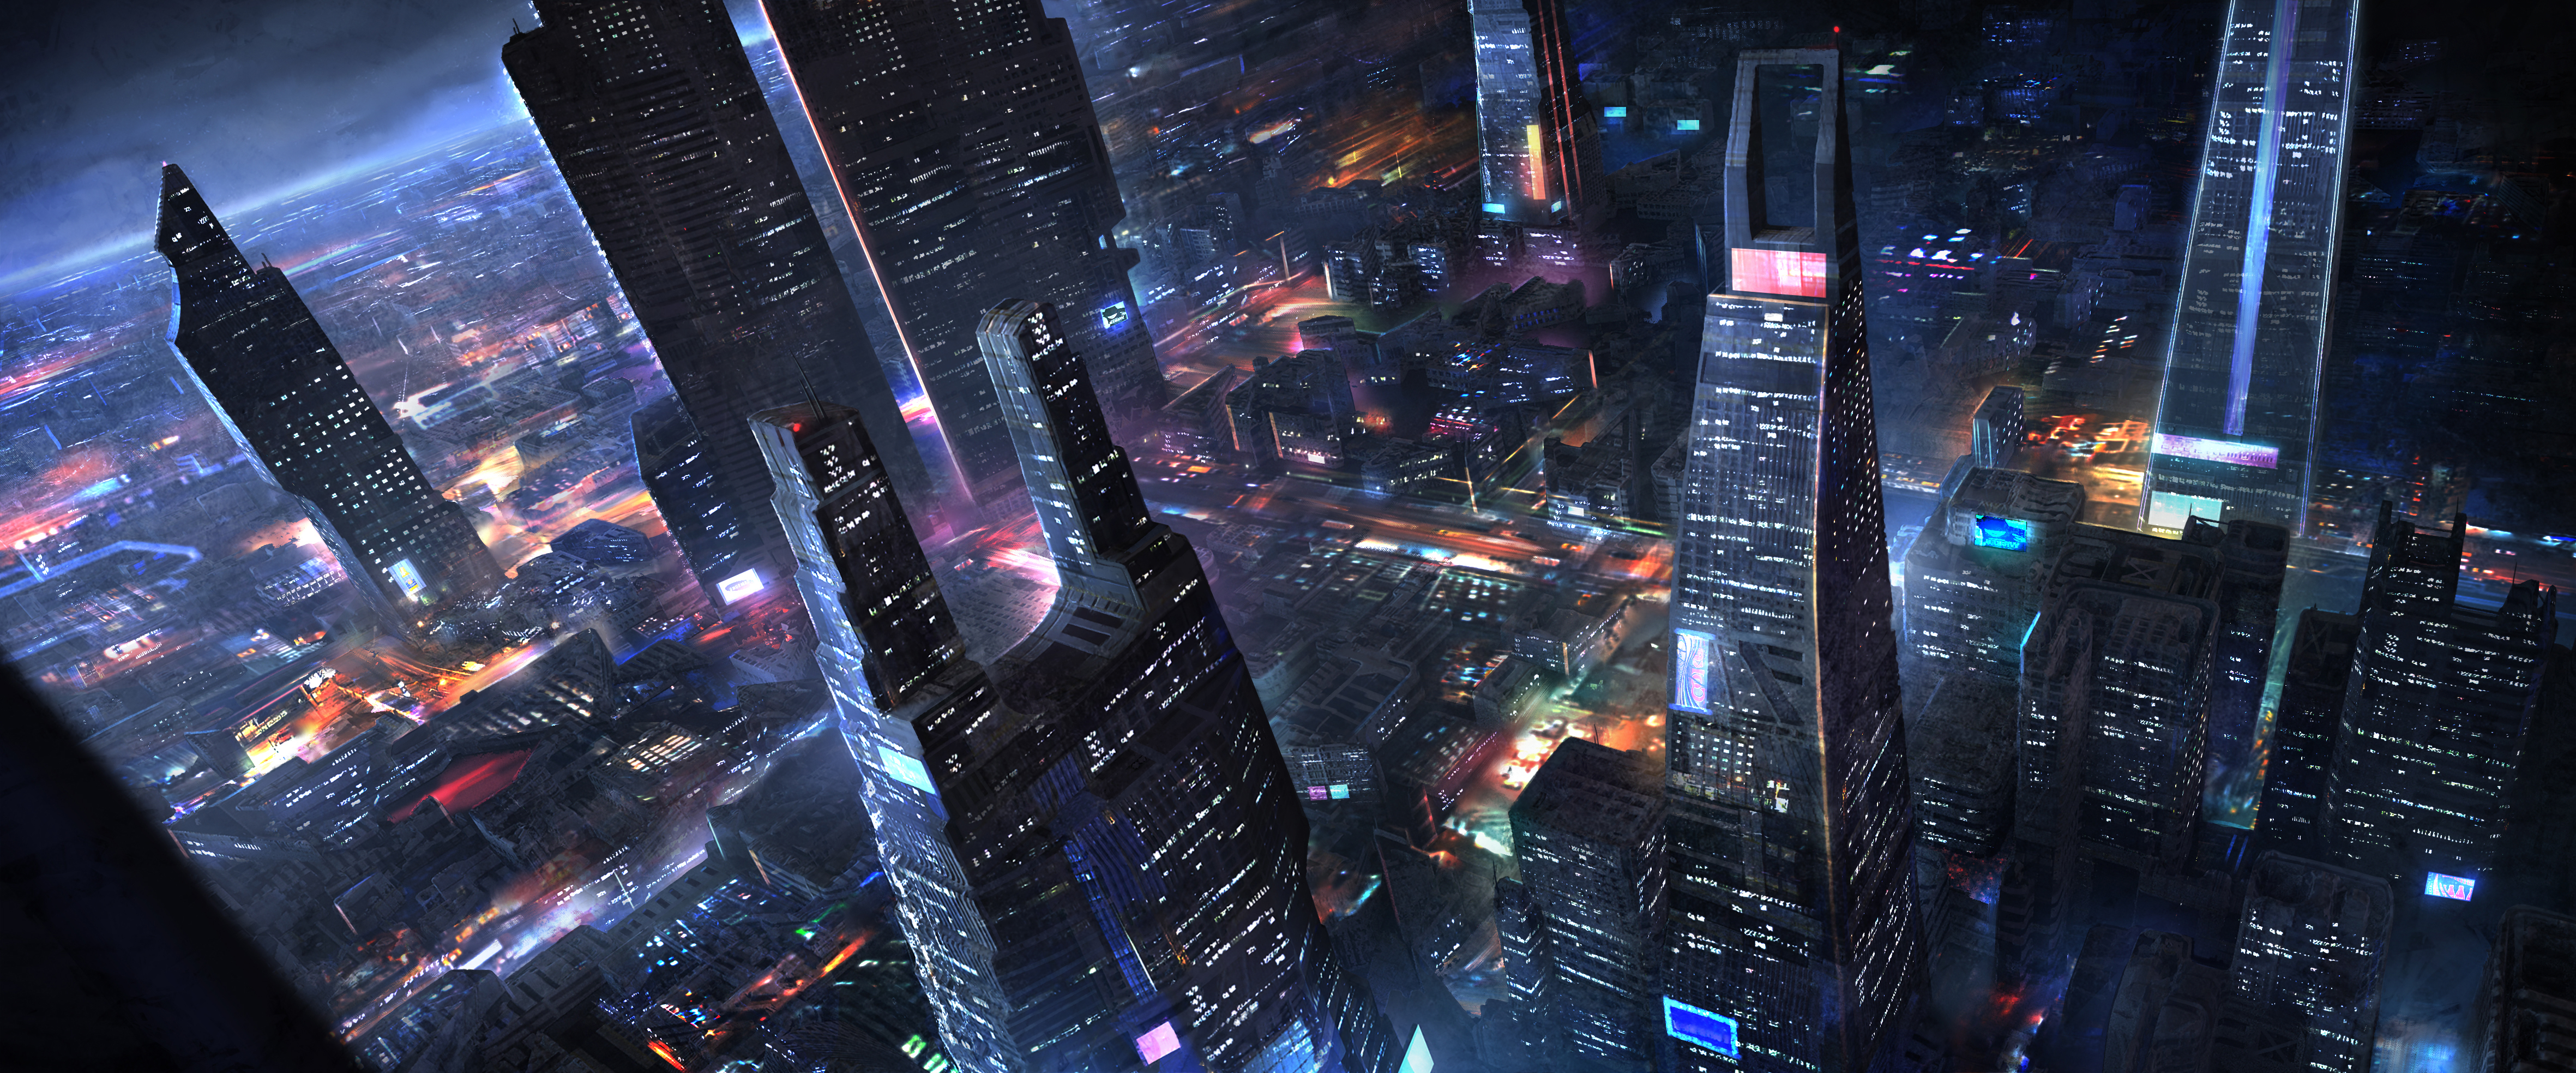 Download mobile wallpaper City, Skyscraper, Building, Cityscape, Sci Fi, Futuristic City for free.